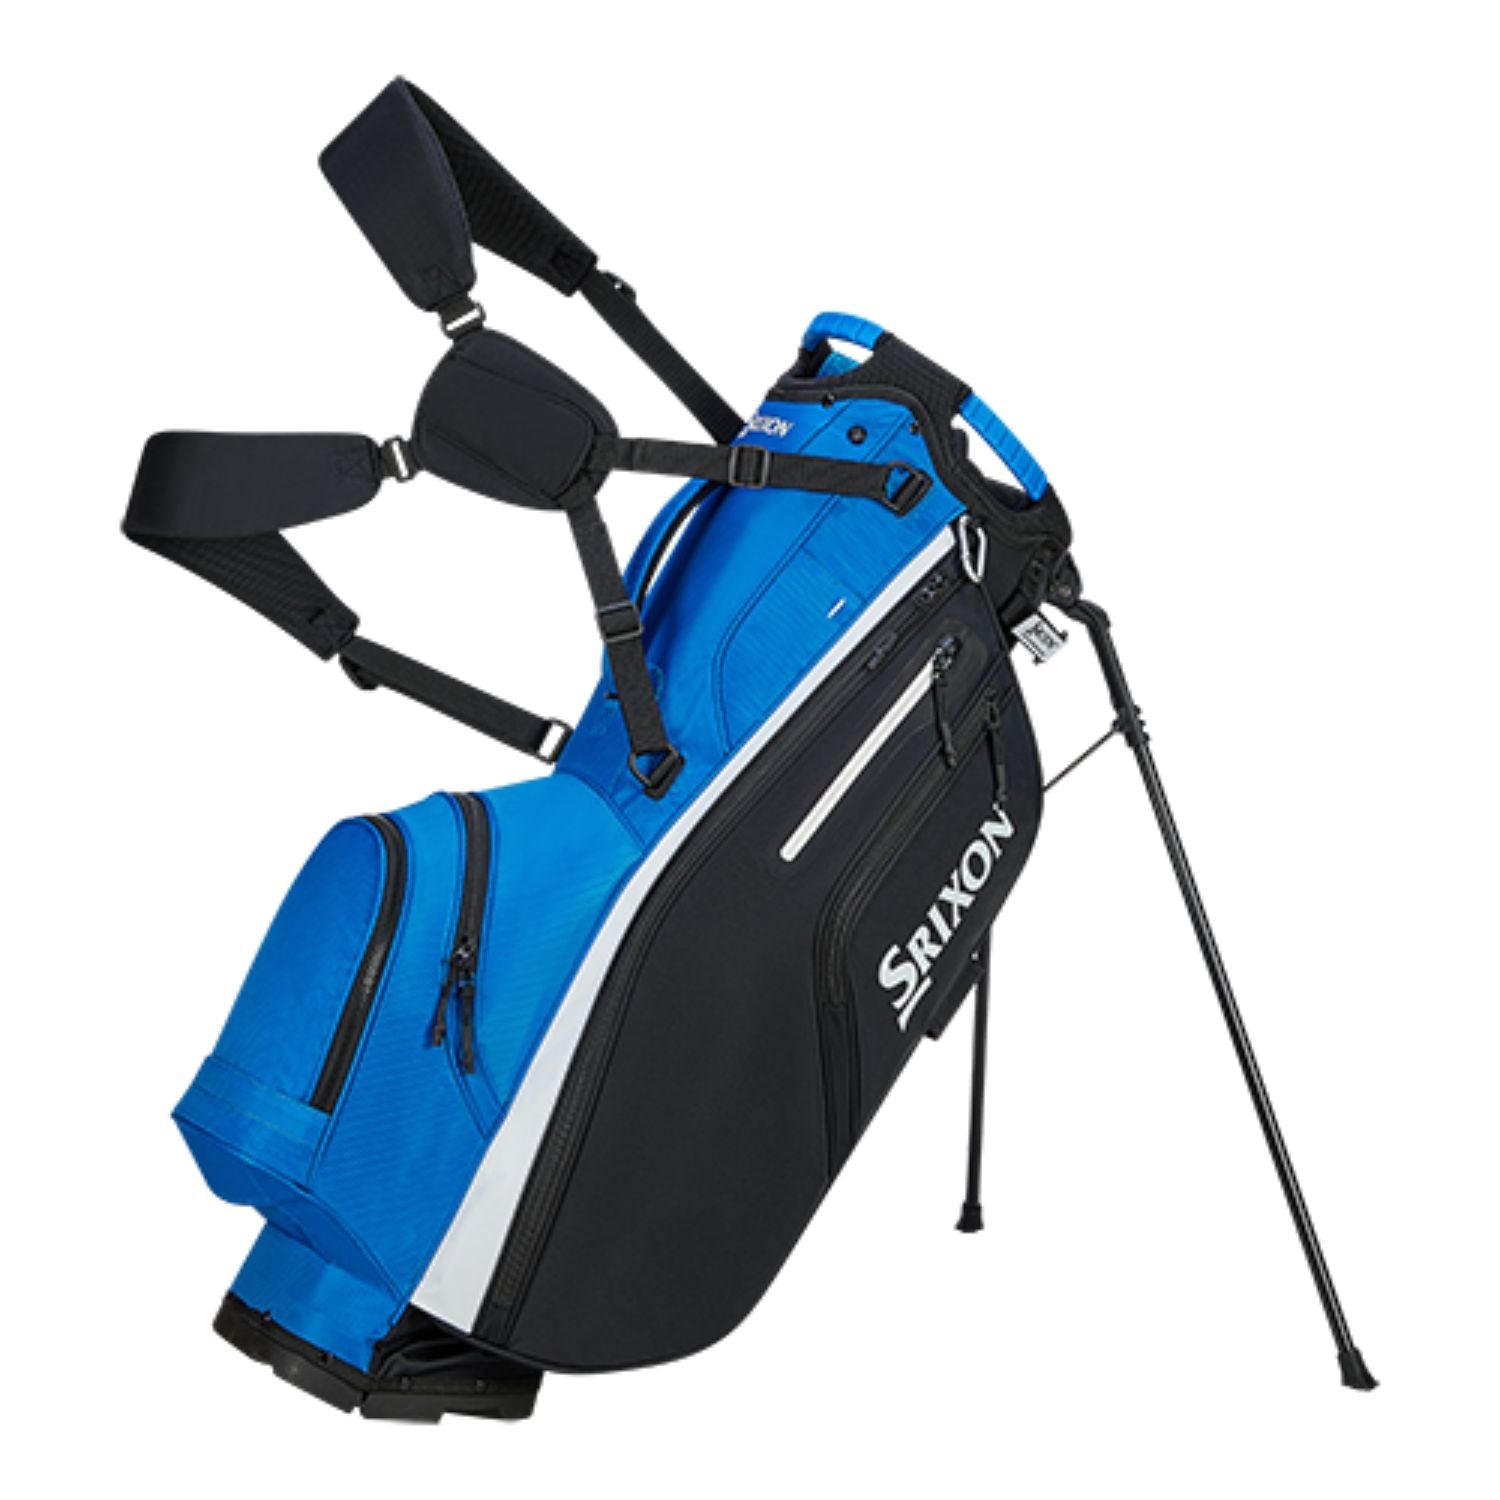 Srixon Premium Golf Stand Bag